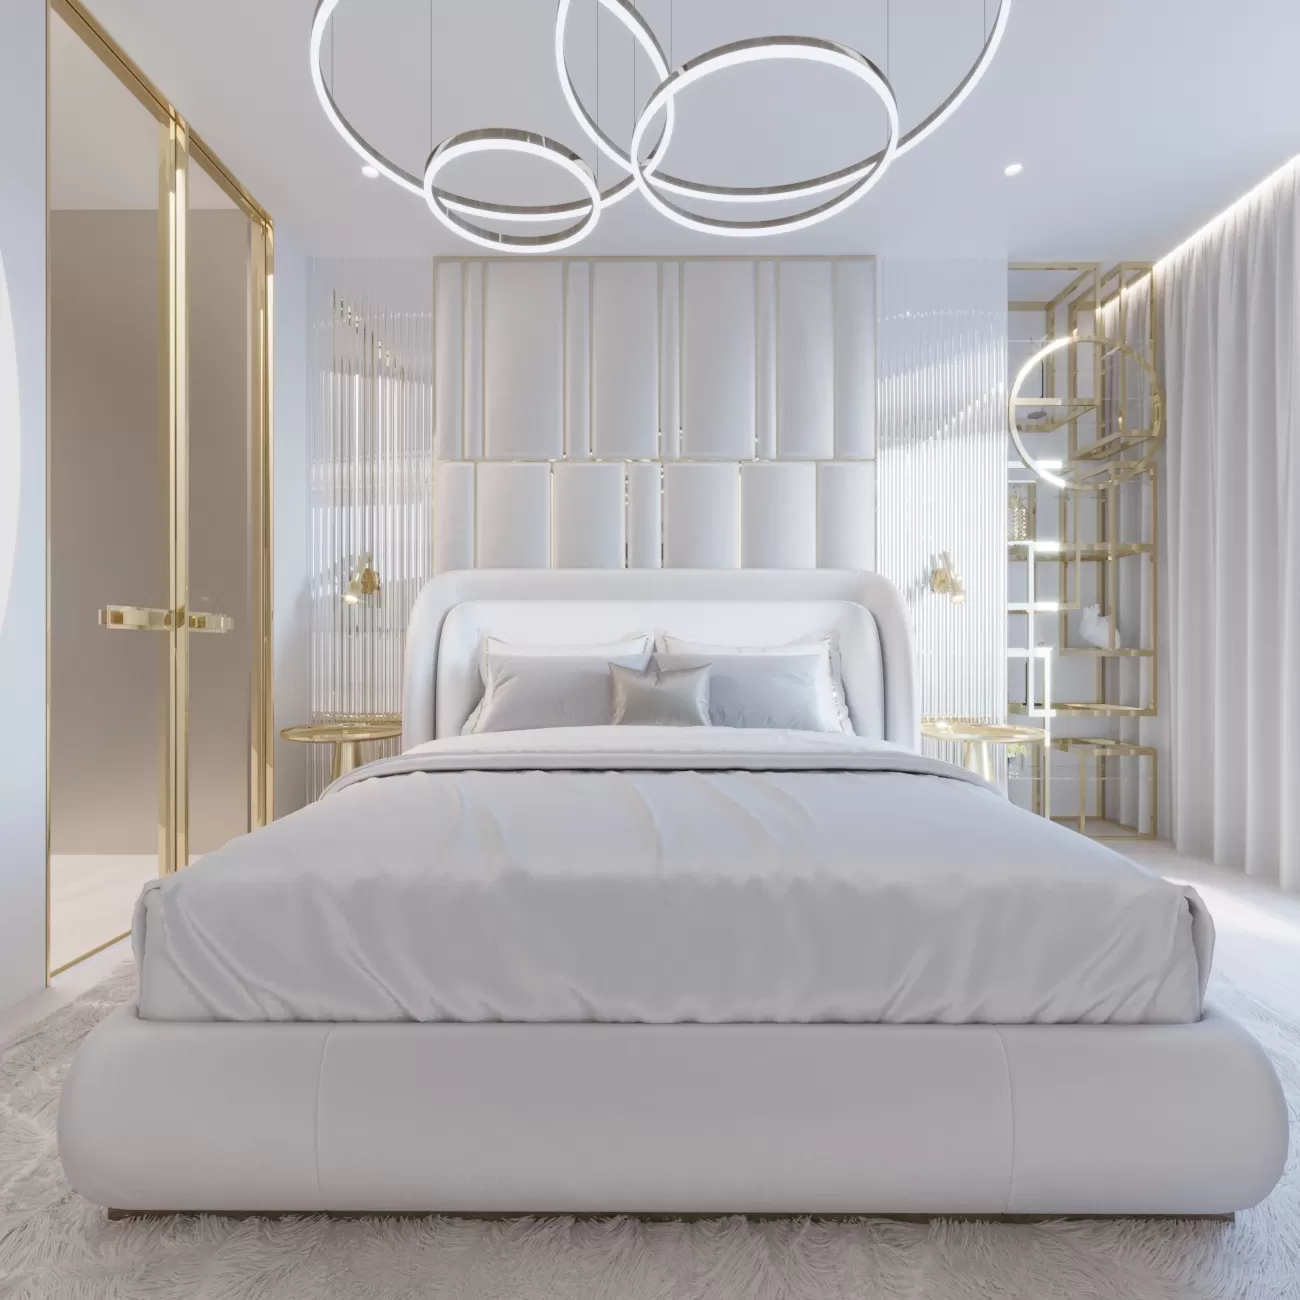 Penthouses Warszawa – master bedroom